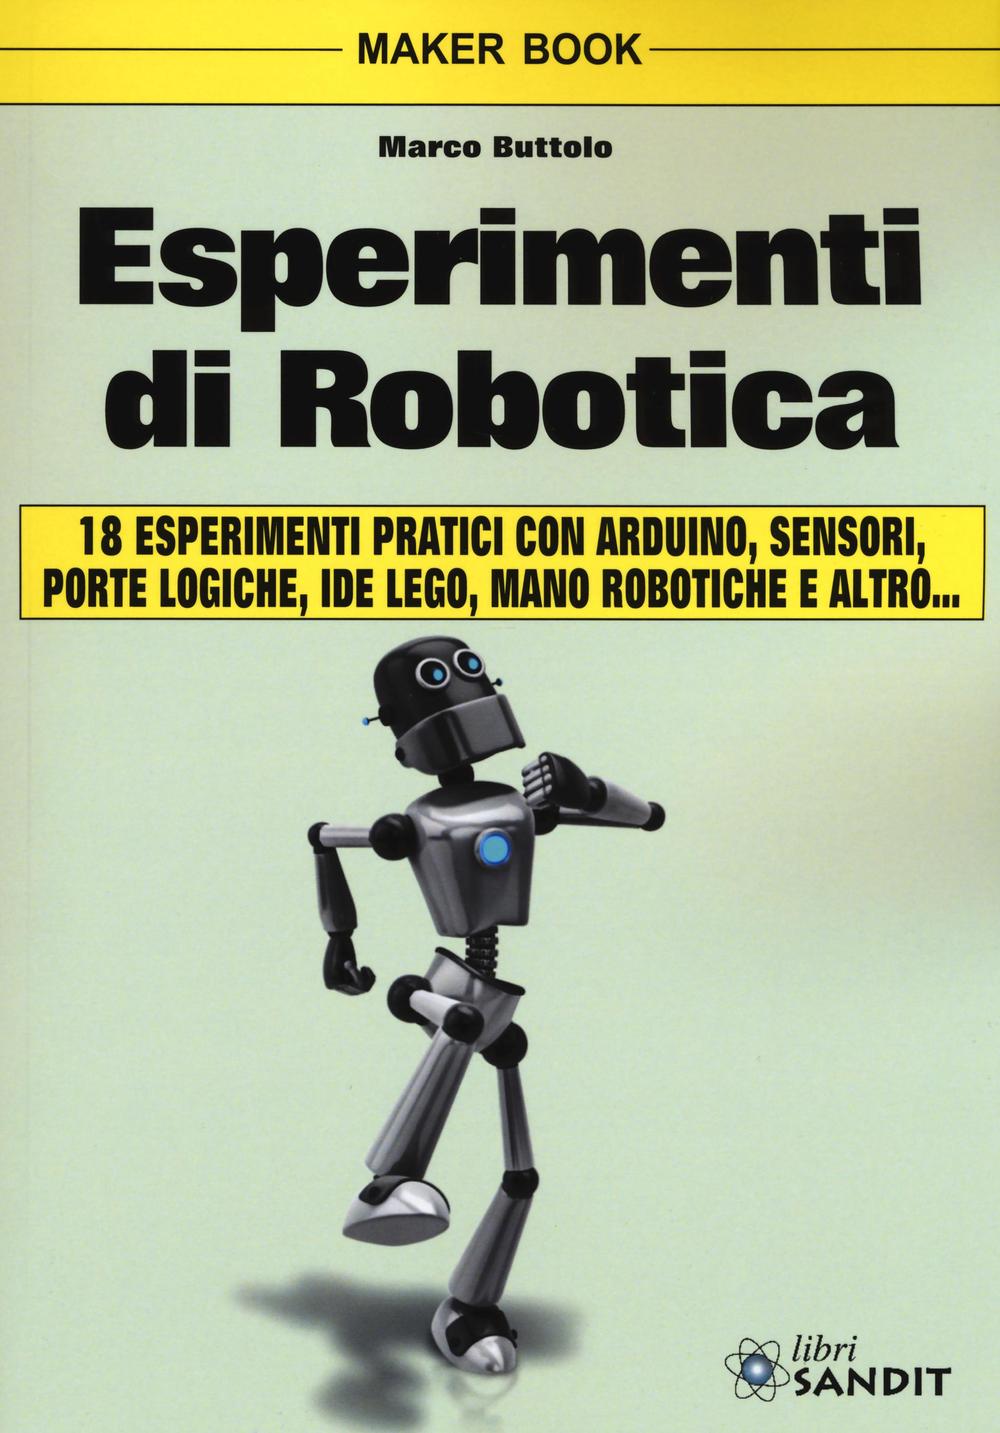 Kniha Esperimenti di robotica Marco Buttolo